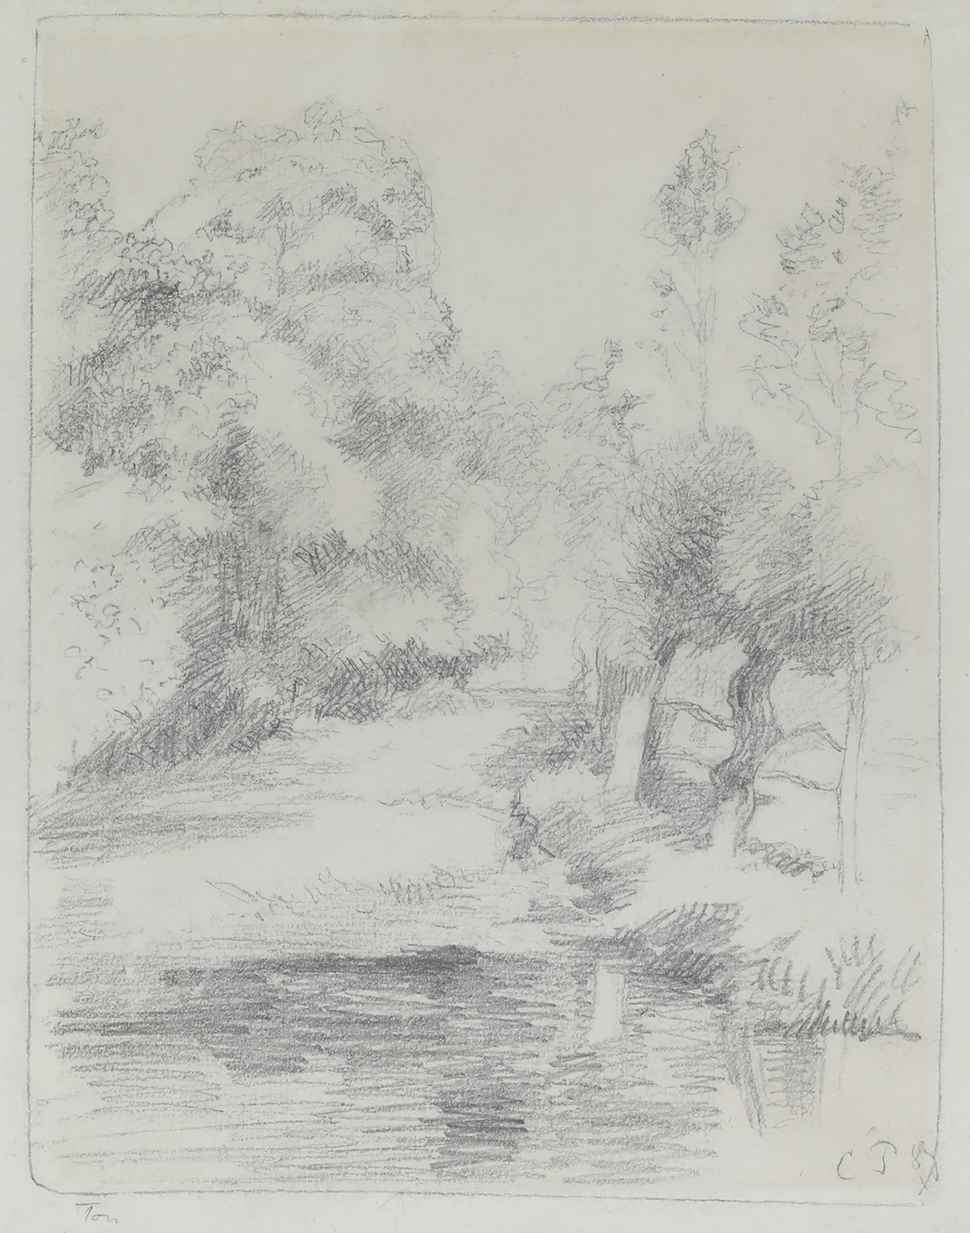 Le lavoir de Bazincourt - Camille Pissarro (1830 - 1903)